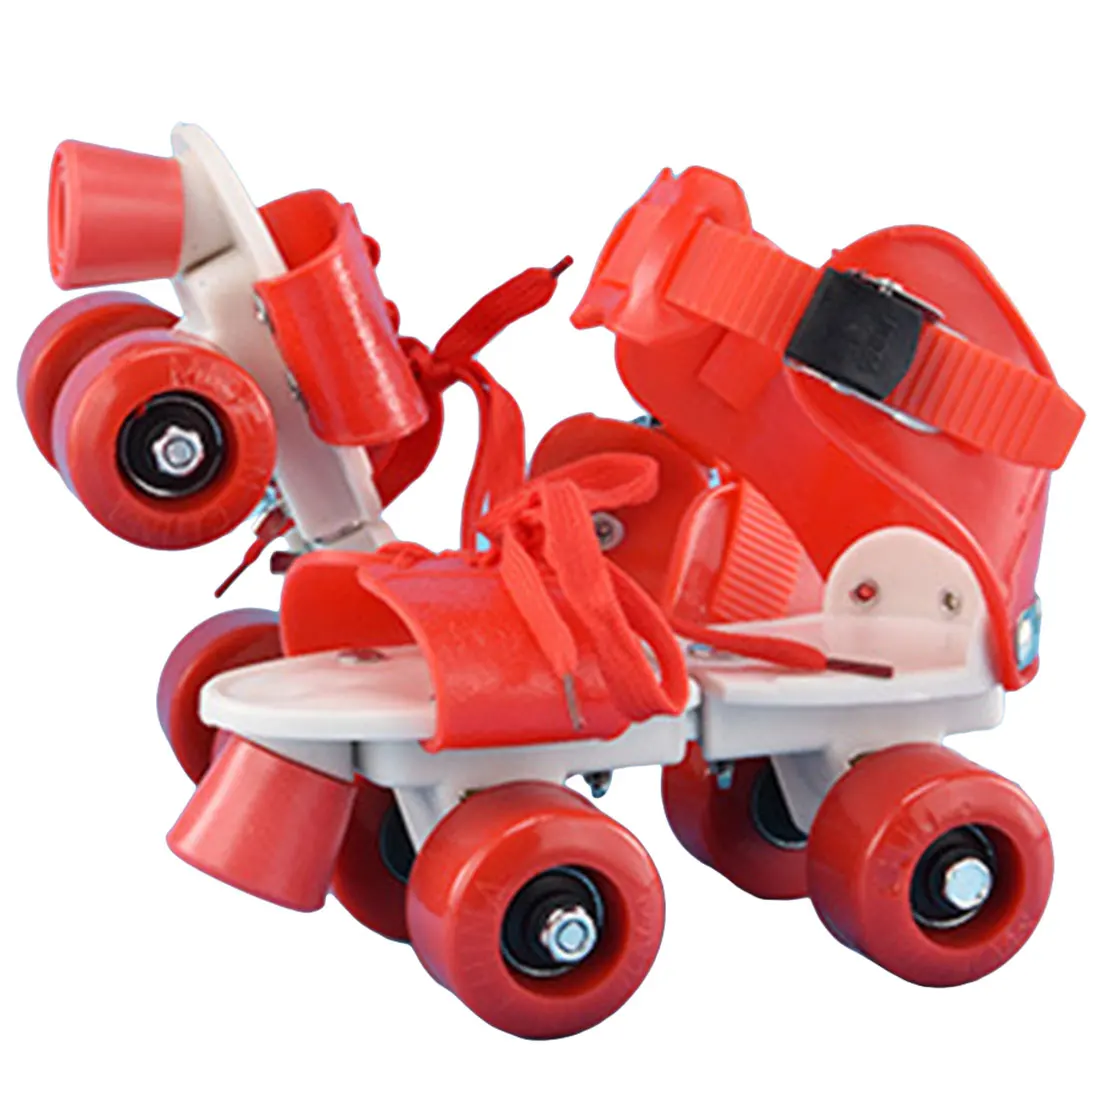 4 колёса детей роликовые коньки двухрядные Регулируемый размеры катание обувь раздвижные слалом роликовые коньки детские подарки - Цвет: B